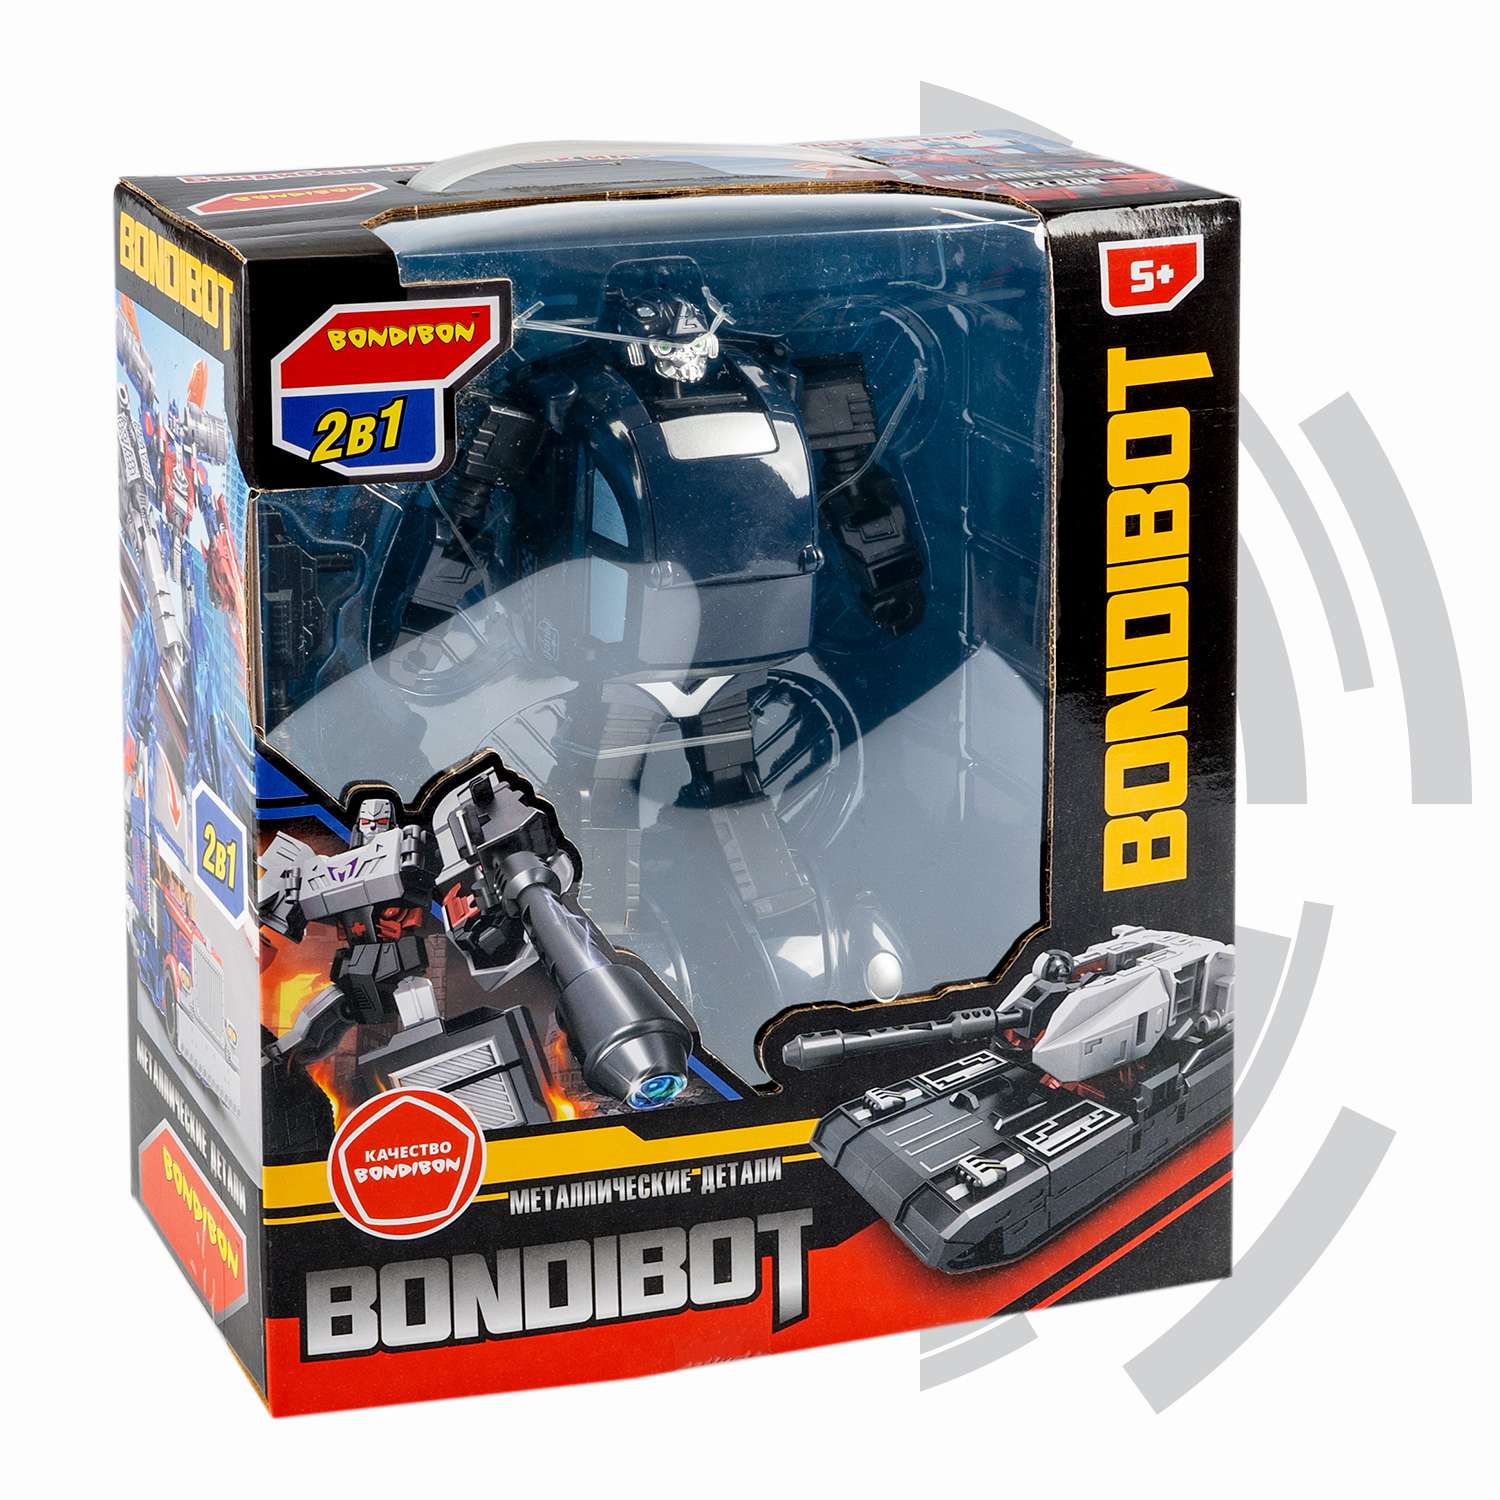 Трансформер BONDIBON BONDIBOT 2 в 1 робот-легковой автомобиль с металлическими деталями синего цвета - фото 2